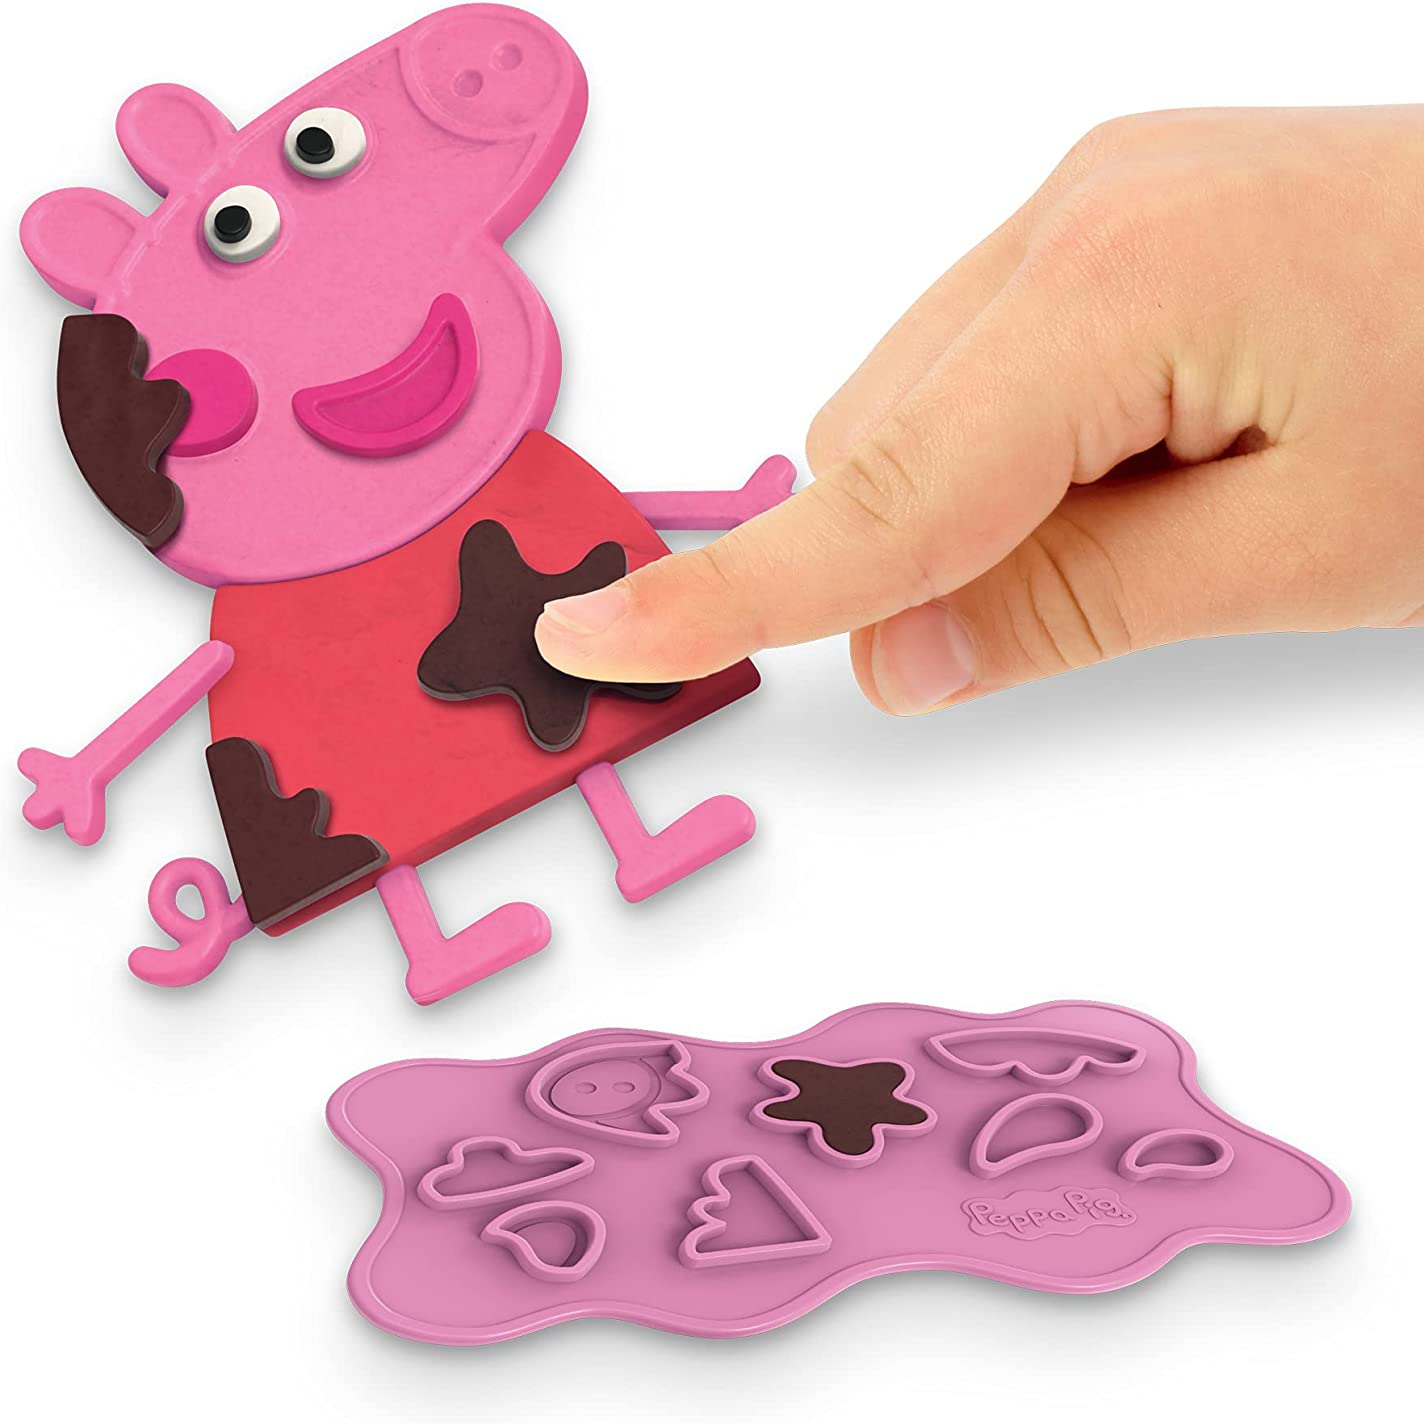 捏出无尽创造力！Play-Doh小猪佩奇橡皮泥套装